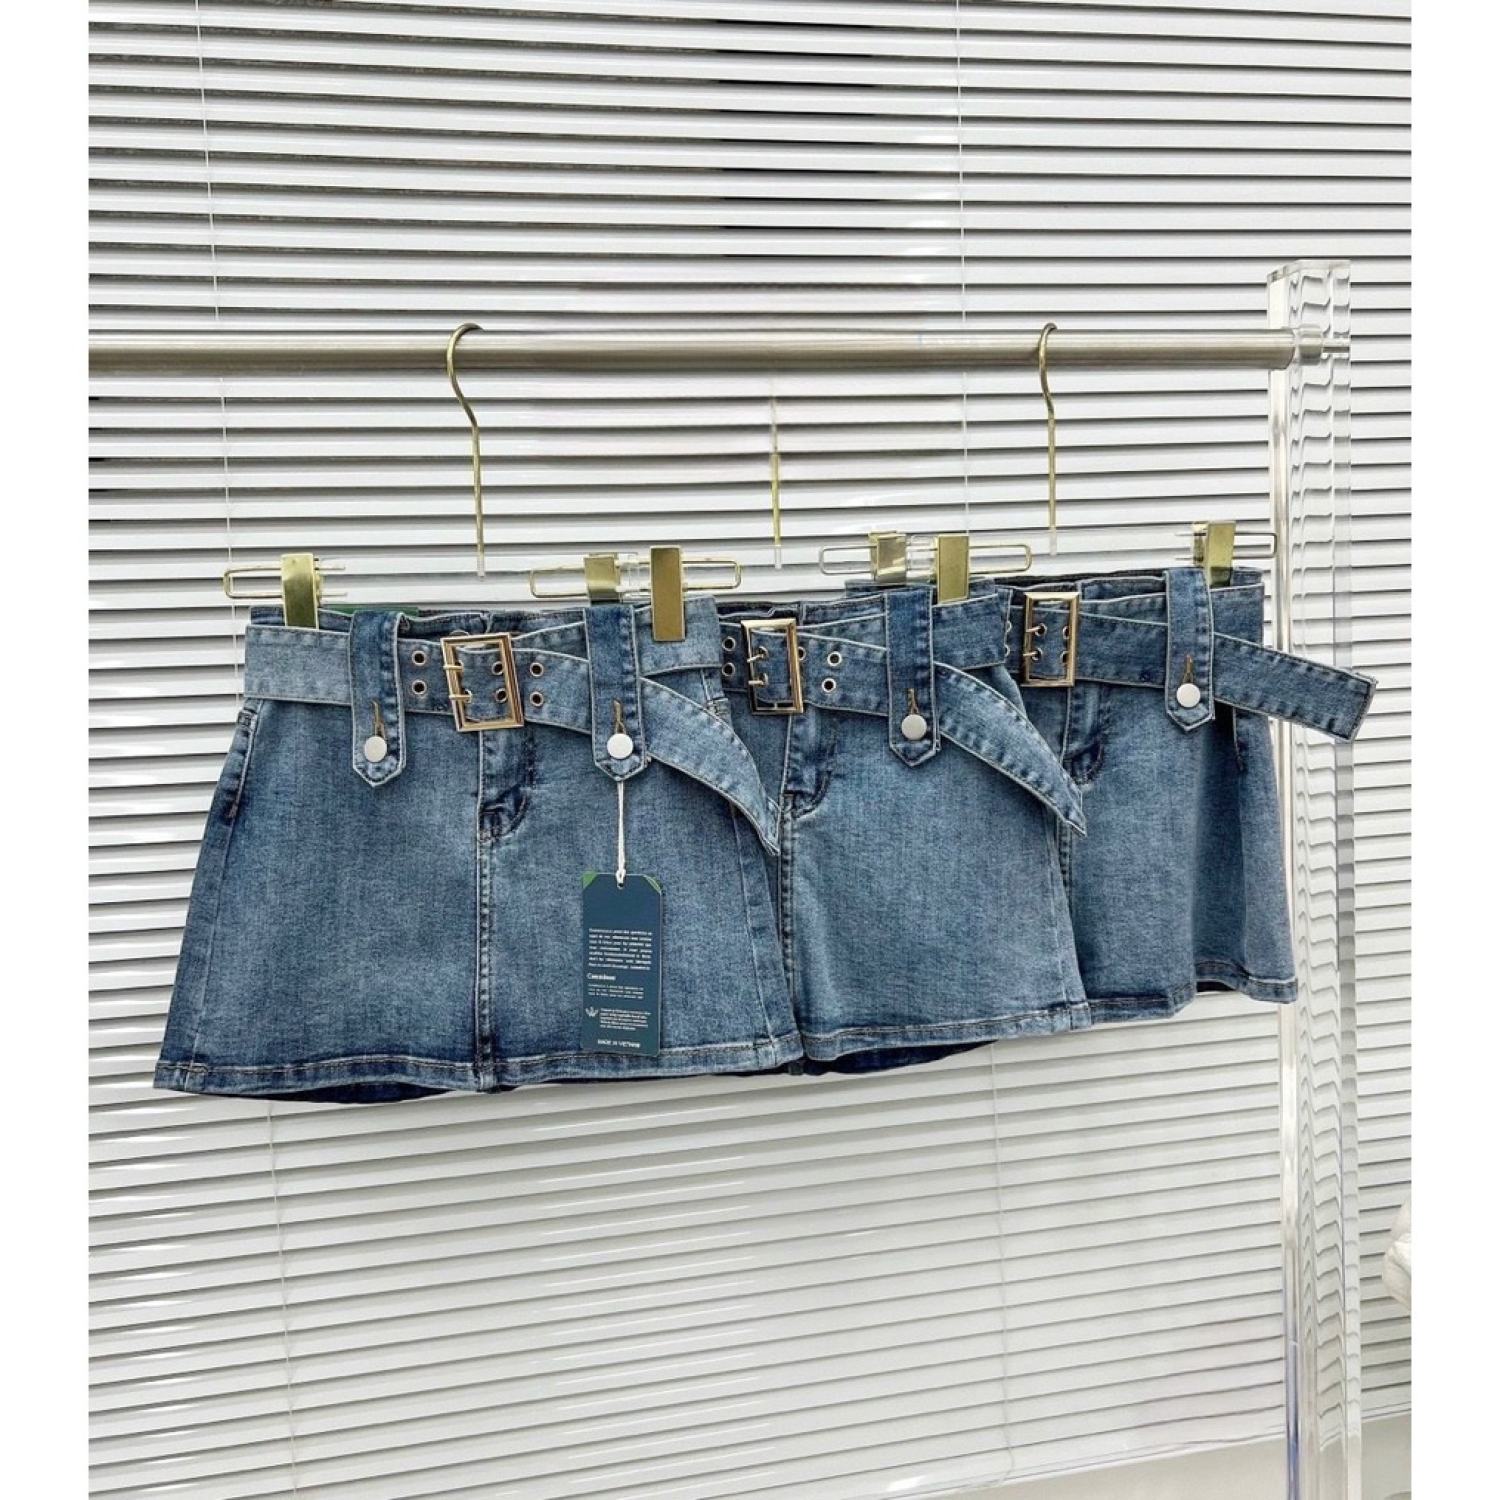 Chân váy bò ngắn chữ A kèm đai bản to CV005 Đầm jean nữ ngắn lưng cao về 2 màu xanh khoi' có belt và quần bảo hộ